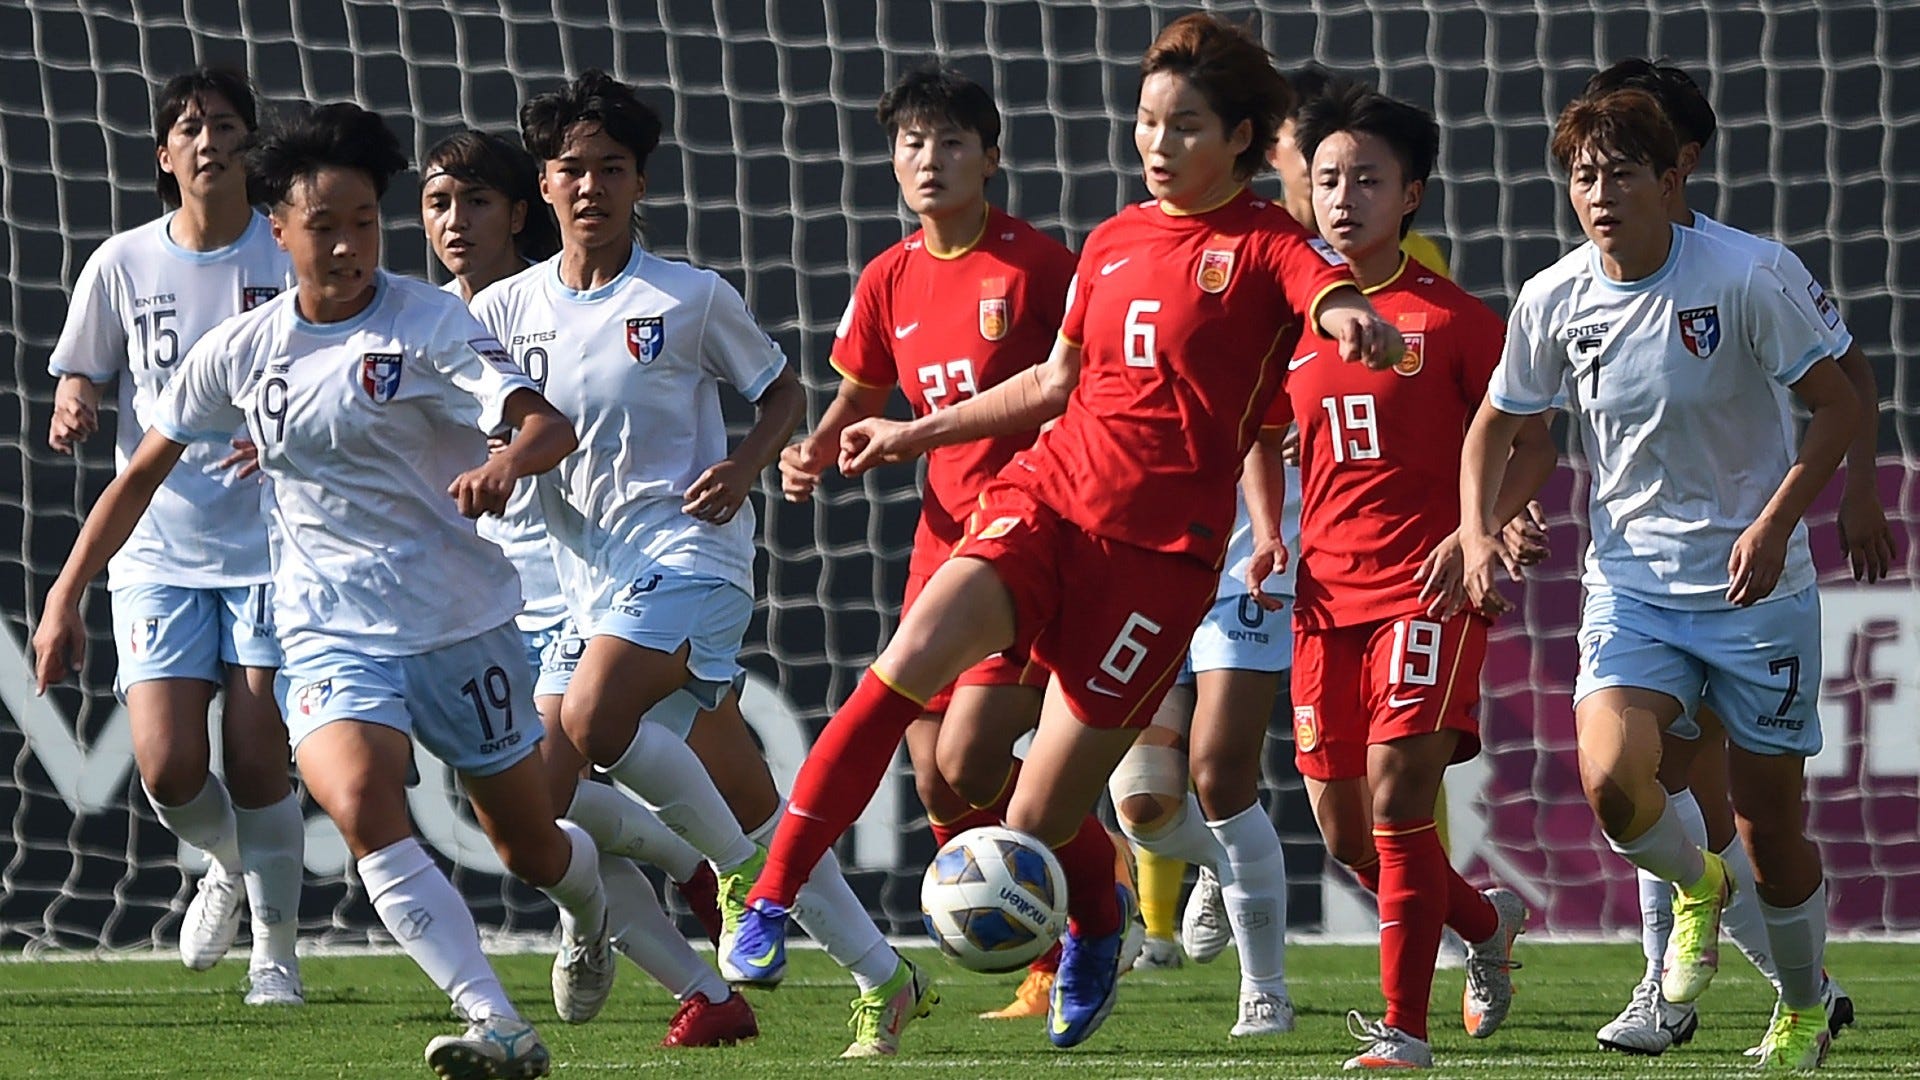 Afc女子アジアカップ22 試合日程 結果 順位表 組み合わせ 出場国一覧 Goal Com 日本